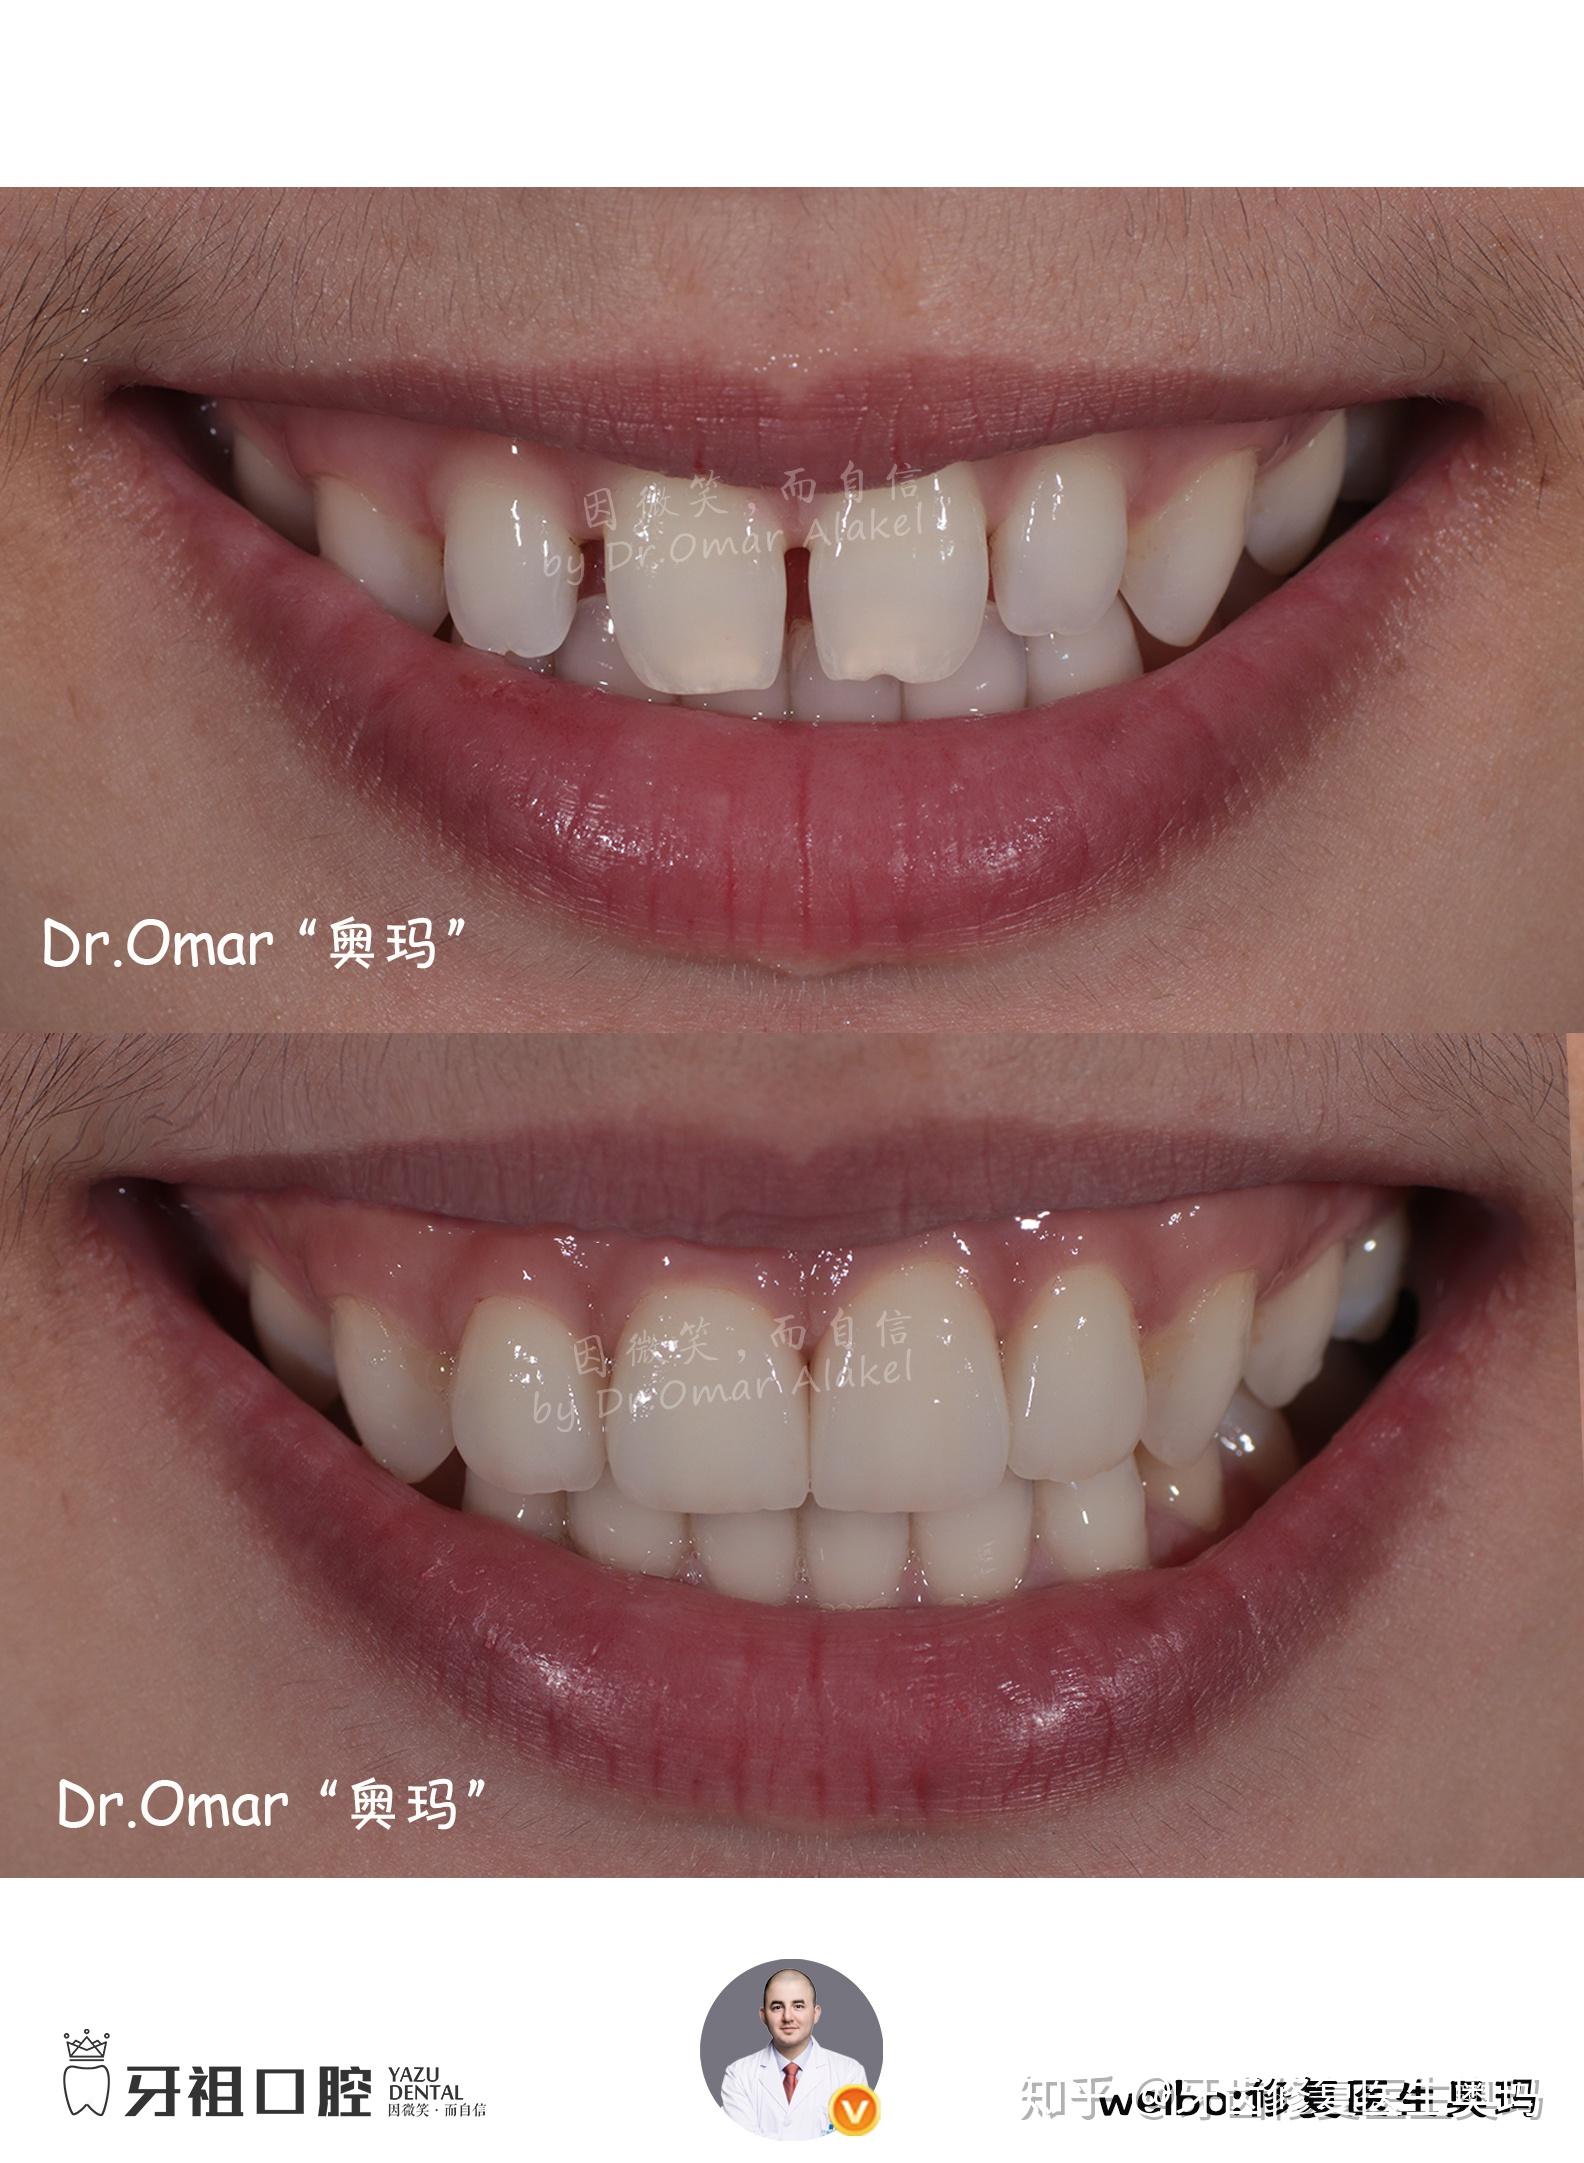 烤瓷牙骨性矫正|改善上牙龈突|调整嘴突面型|重建自信笑容 - 哔哩哔哩